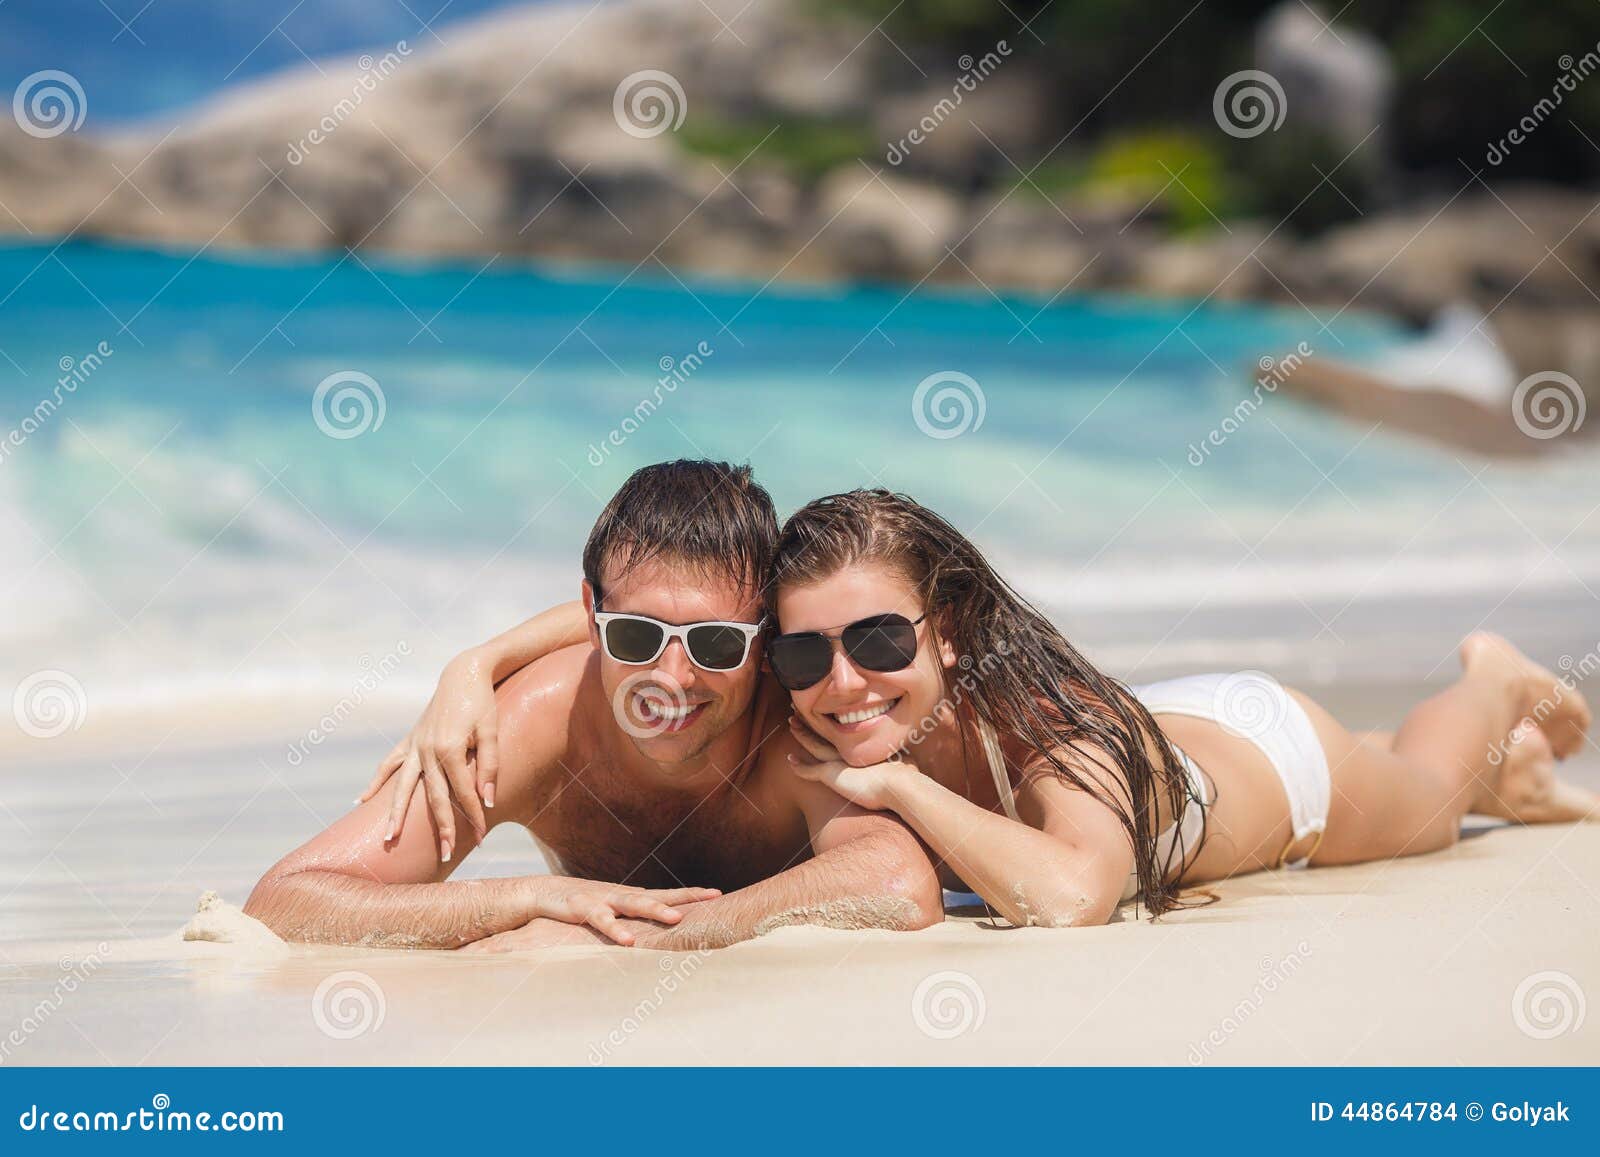 Пока муж на пляже. Красивые позы на море в купальнике с мужем. Красивые позы для фотосессии на море с мужем. Красиво сфотографироваться на море с мужем. Красиво сфоткаться с мужем на море.